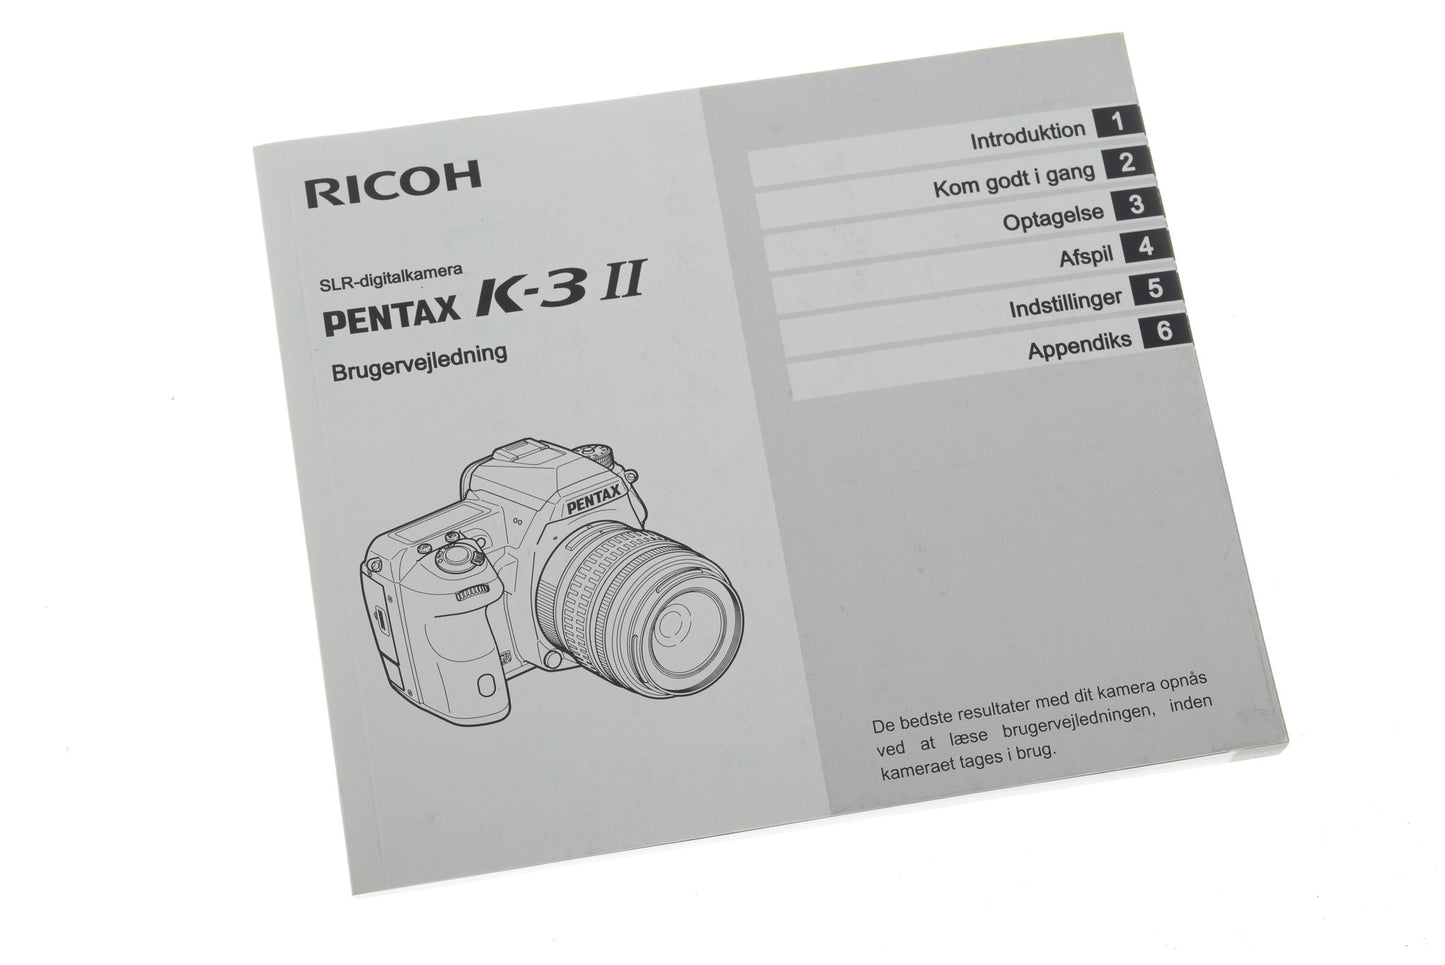 Ricoh Pentax K-3 II Brugervejledning